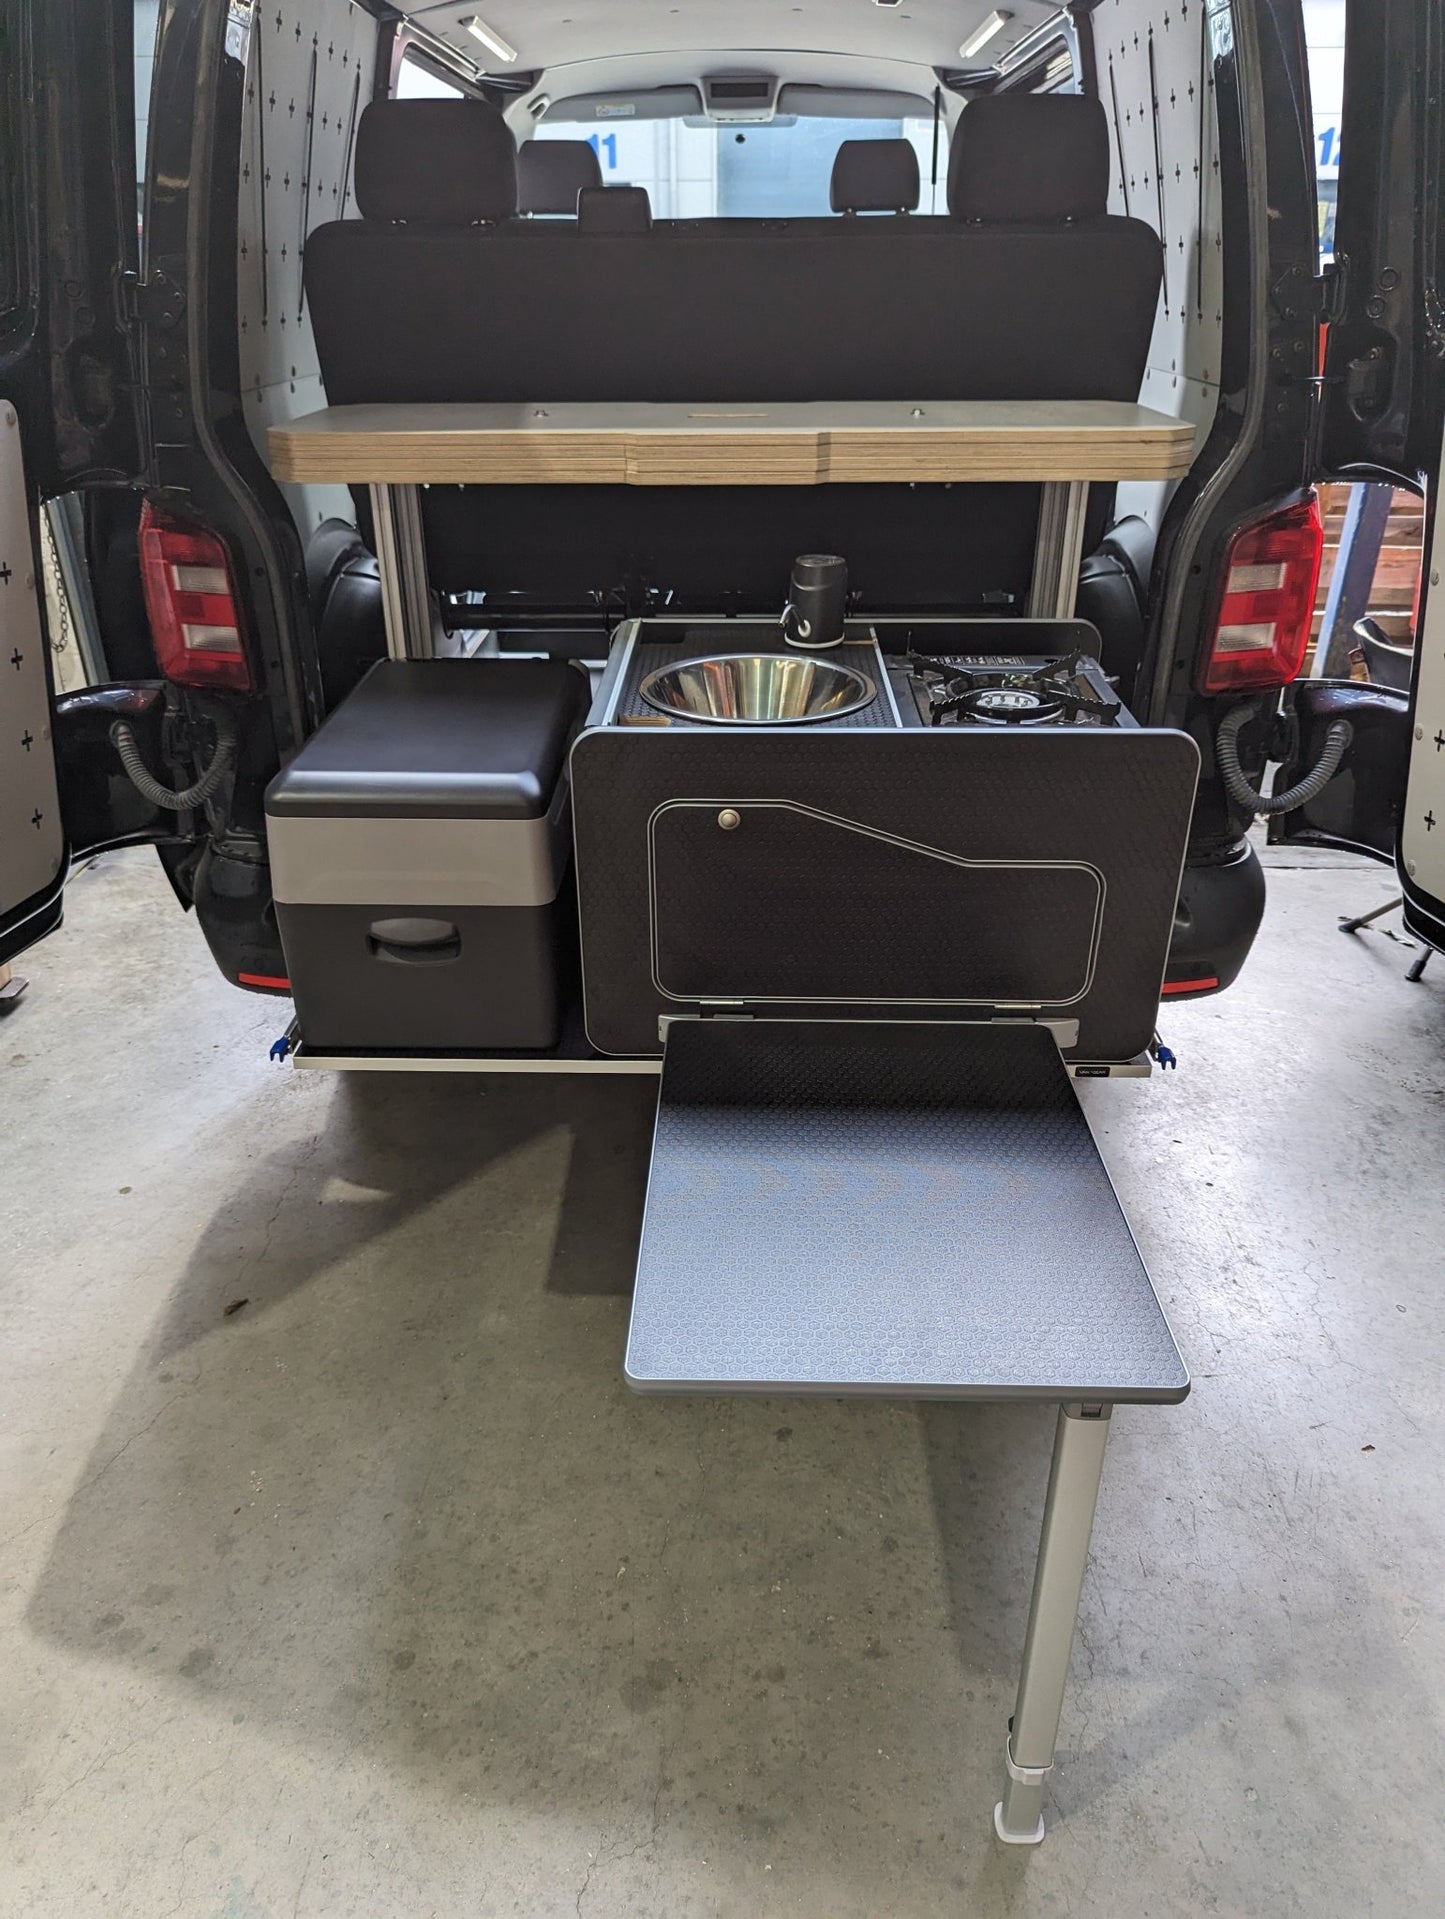 NEW Vangear Modular-Bed campervan Bed (two 3/4 front) - Vangear UK